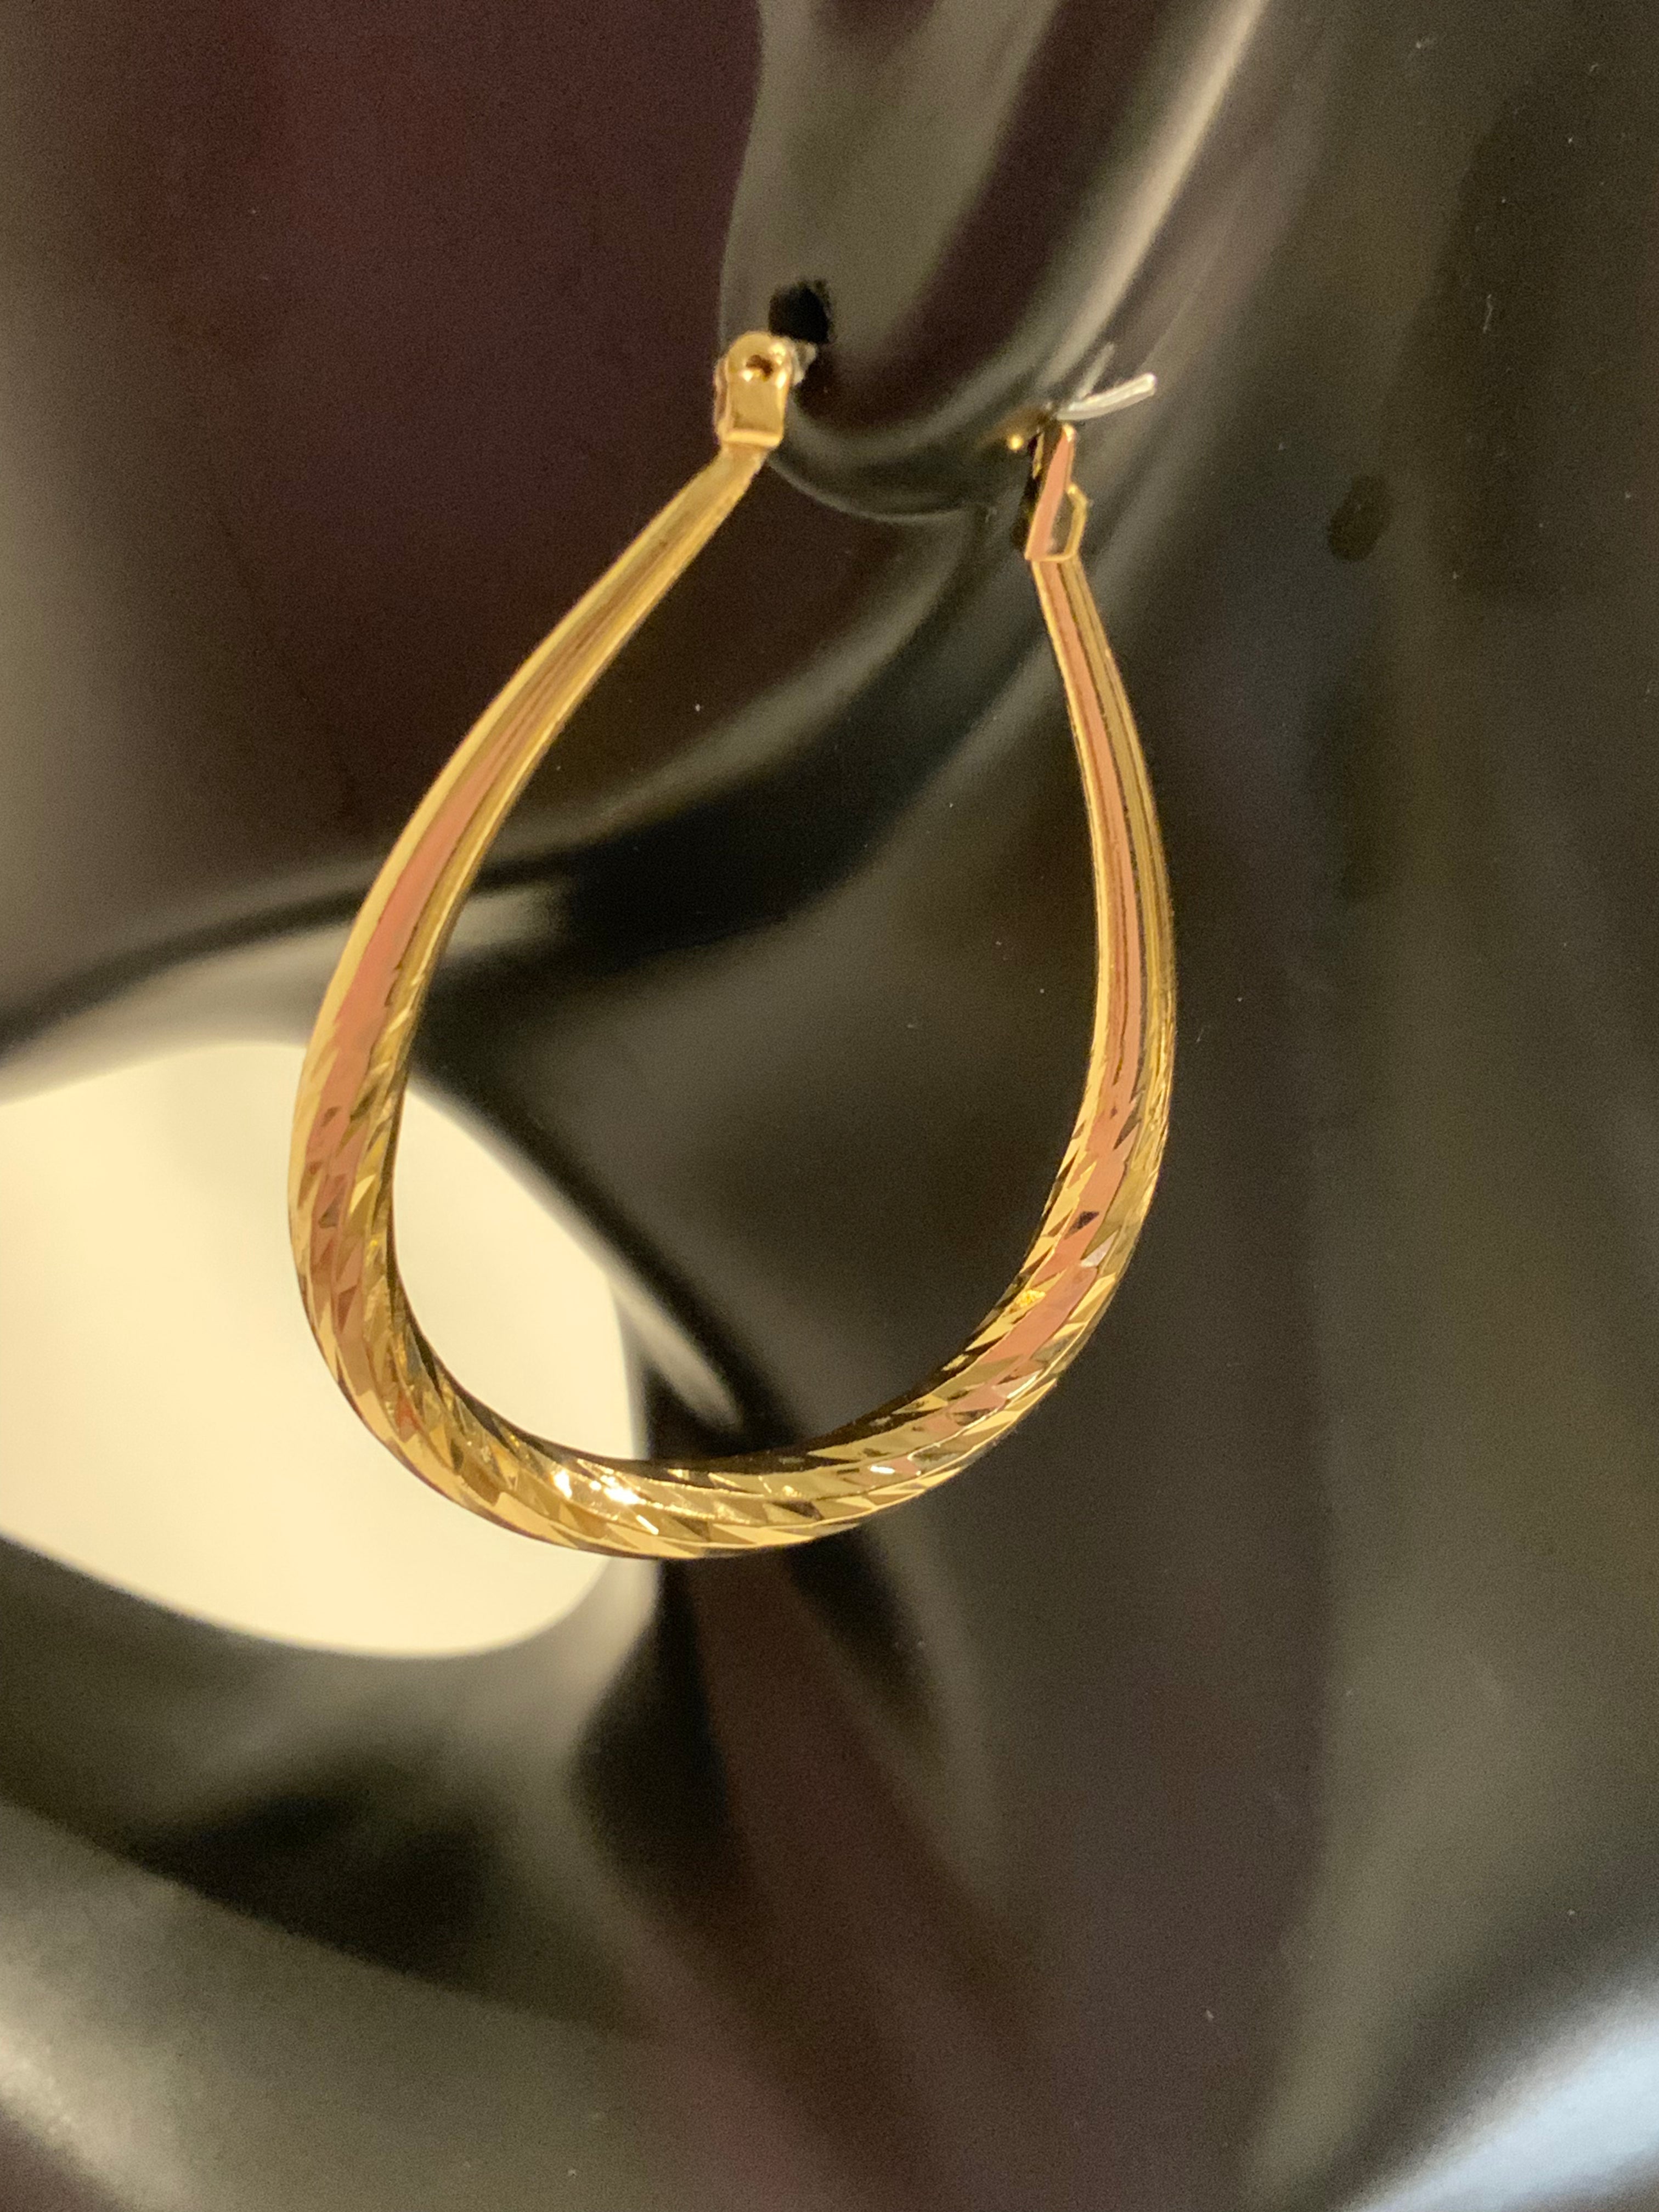 Brass Hollow Oval Hoop Earrings